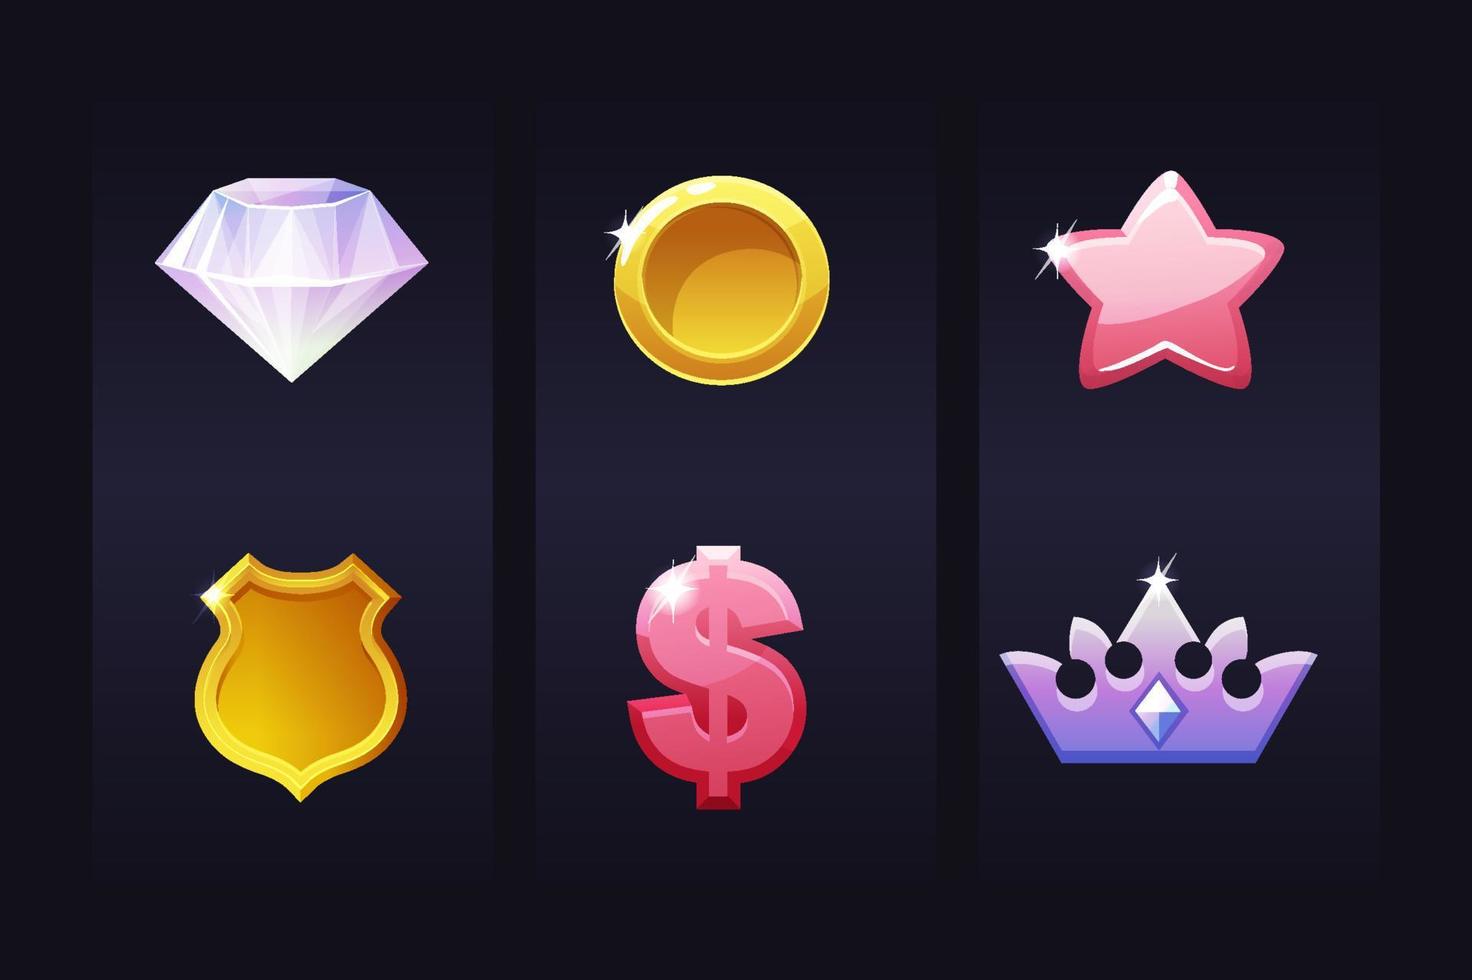 définir des icônes pour le jeu, signes diamant, couronne, dollar, étoile pour les actifs. modèles d'objets de collection d'illustration vectorielle pour l'interface utilisateur. vecteur